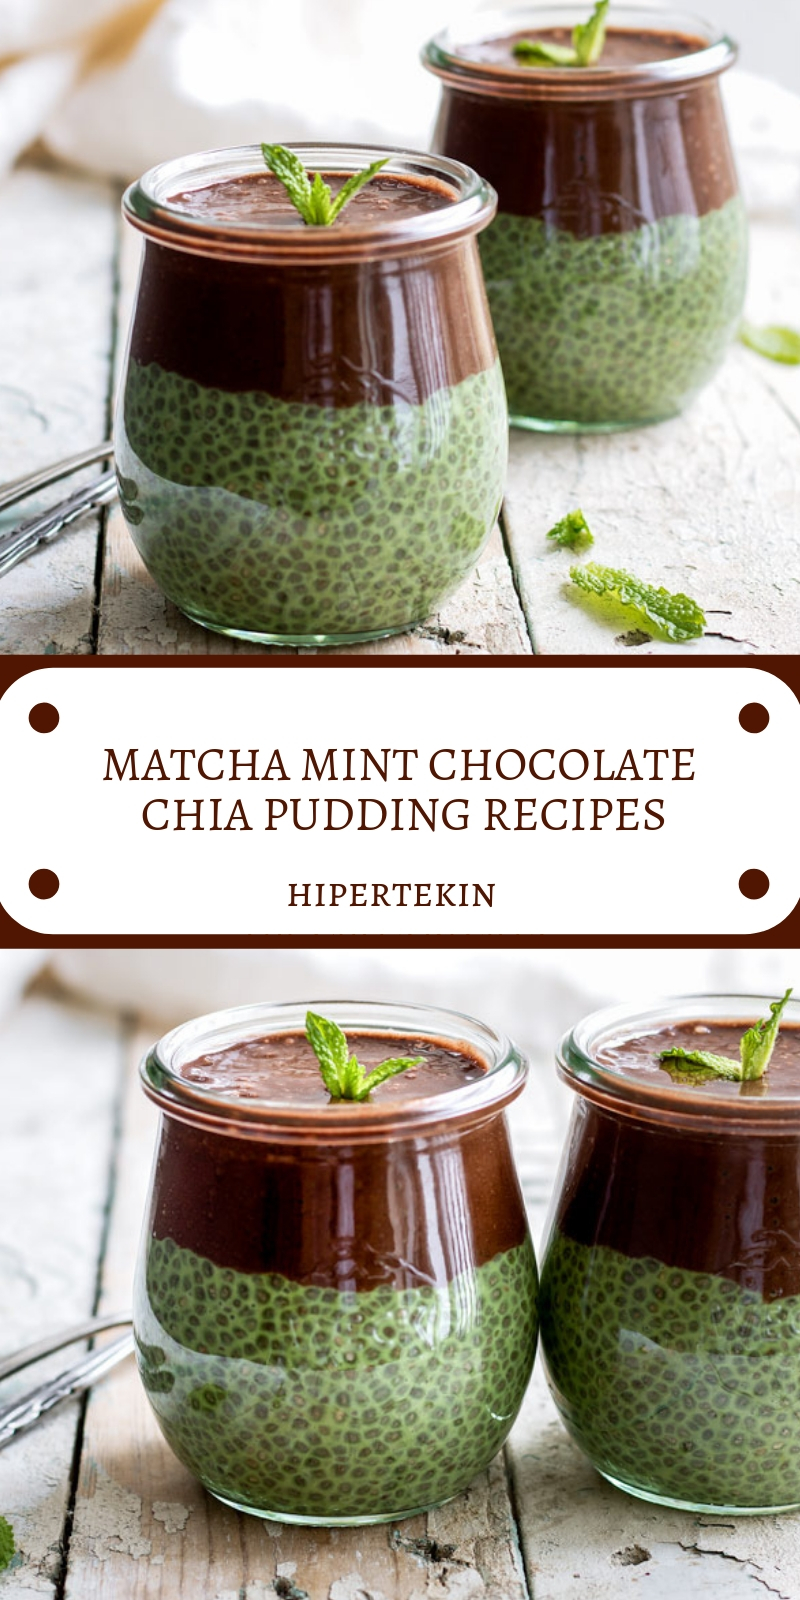 MATCHA MINT CHOCOLATE CHIA PUDDING RECIPES